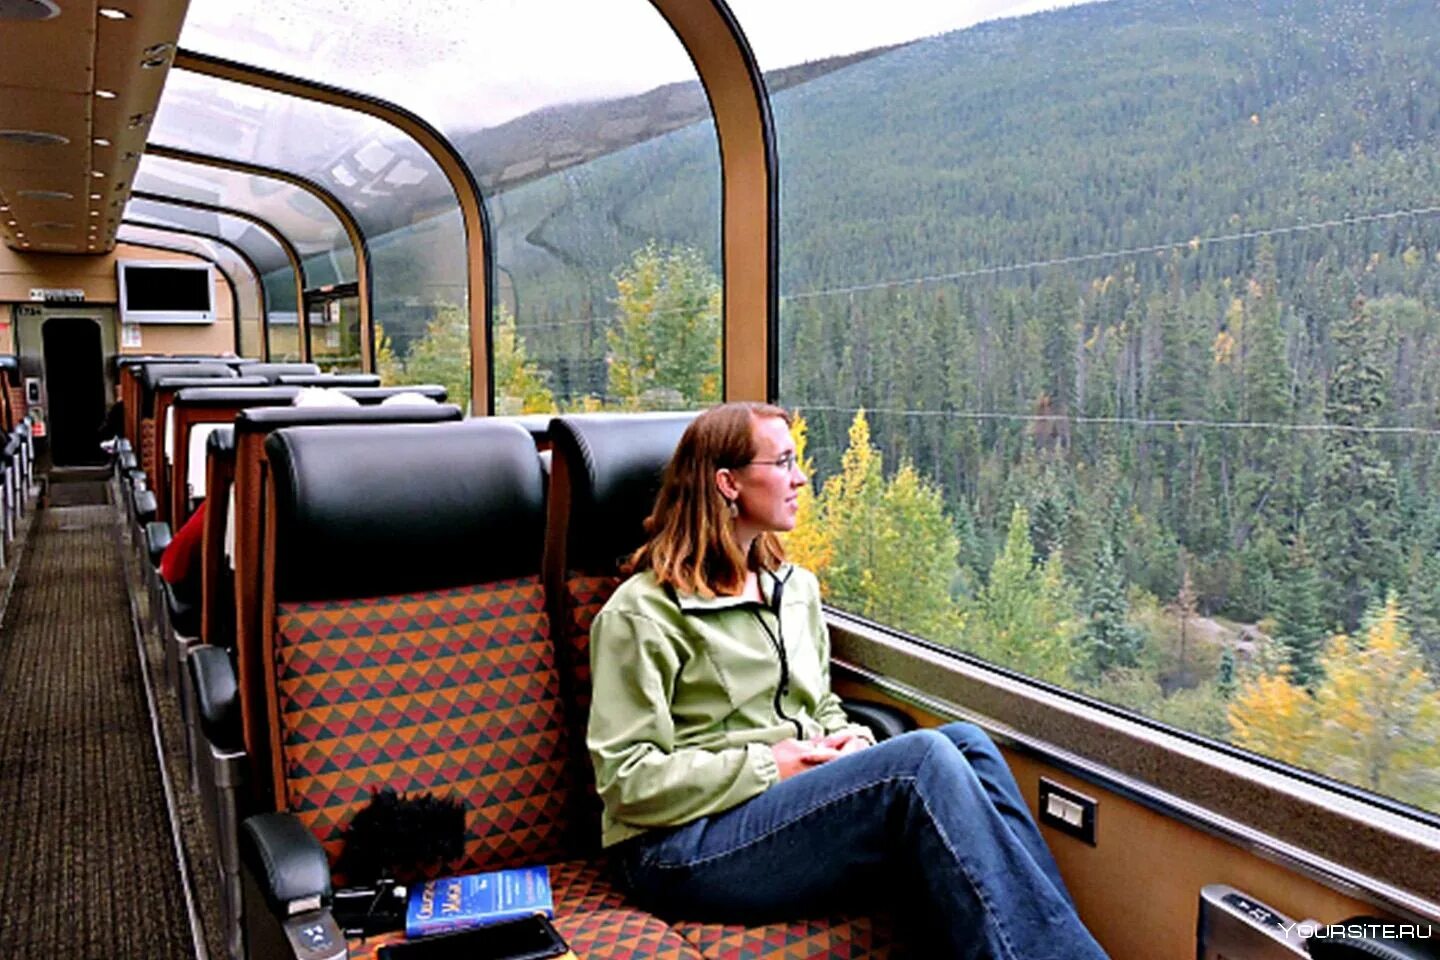 Travelling is expensive. Путешествие на поезде. Туристический поезд. Туристско экскурсионные поезда. Транспорт для путешествий.